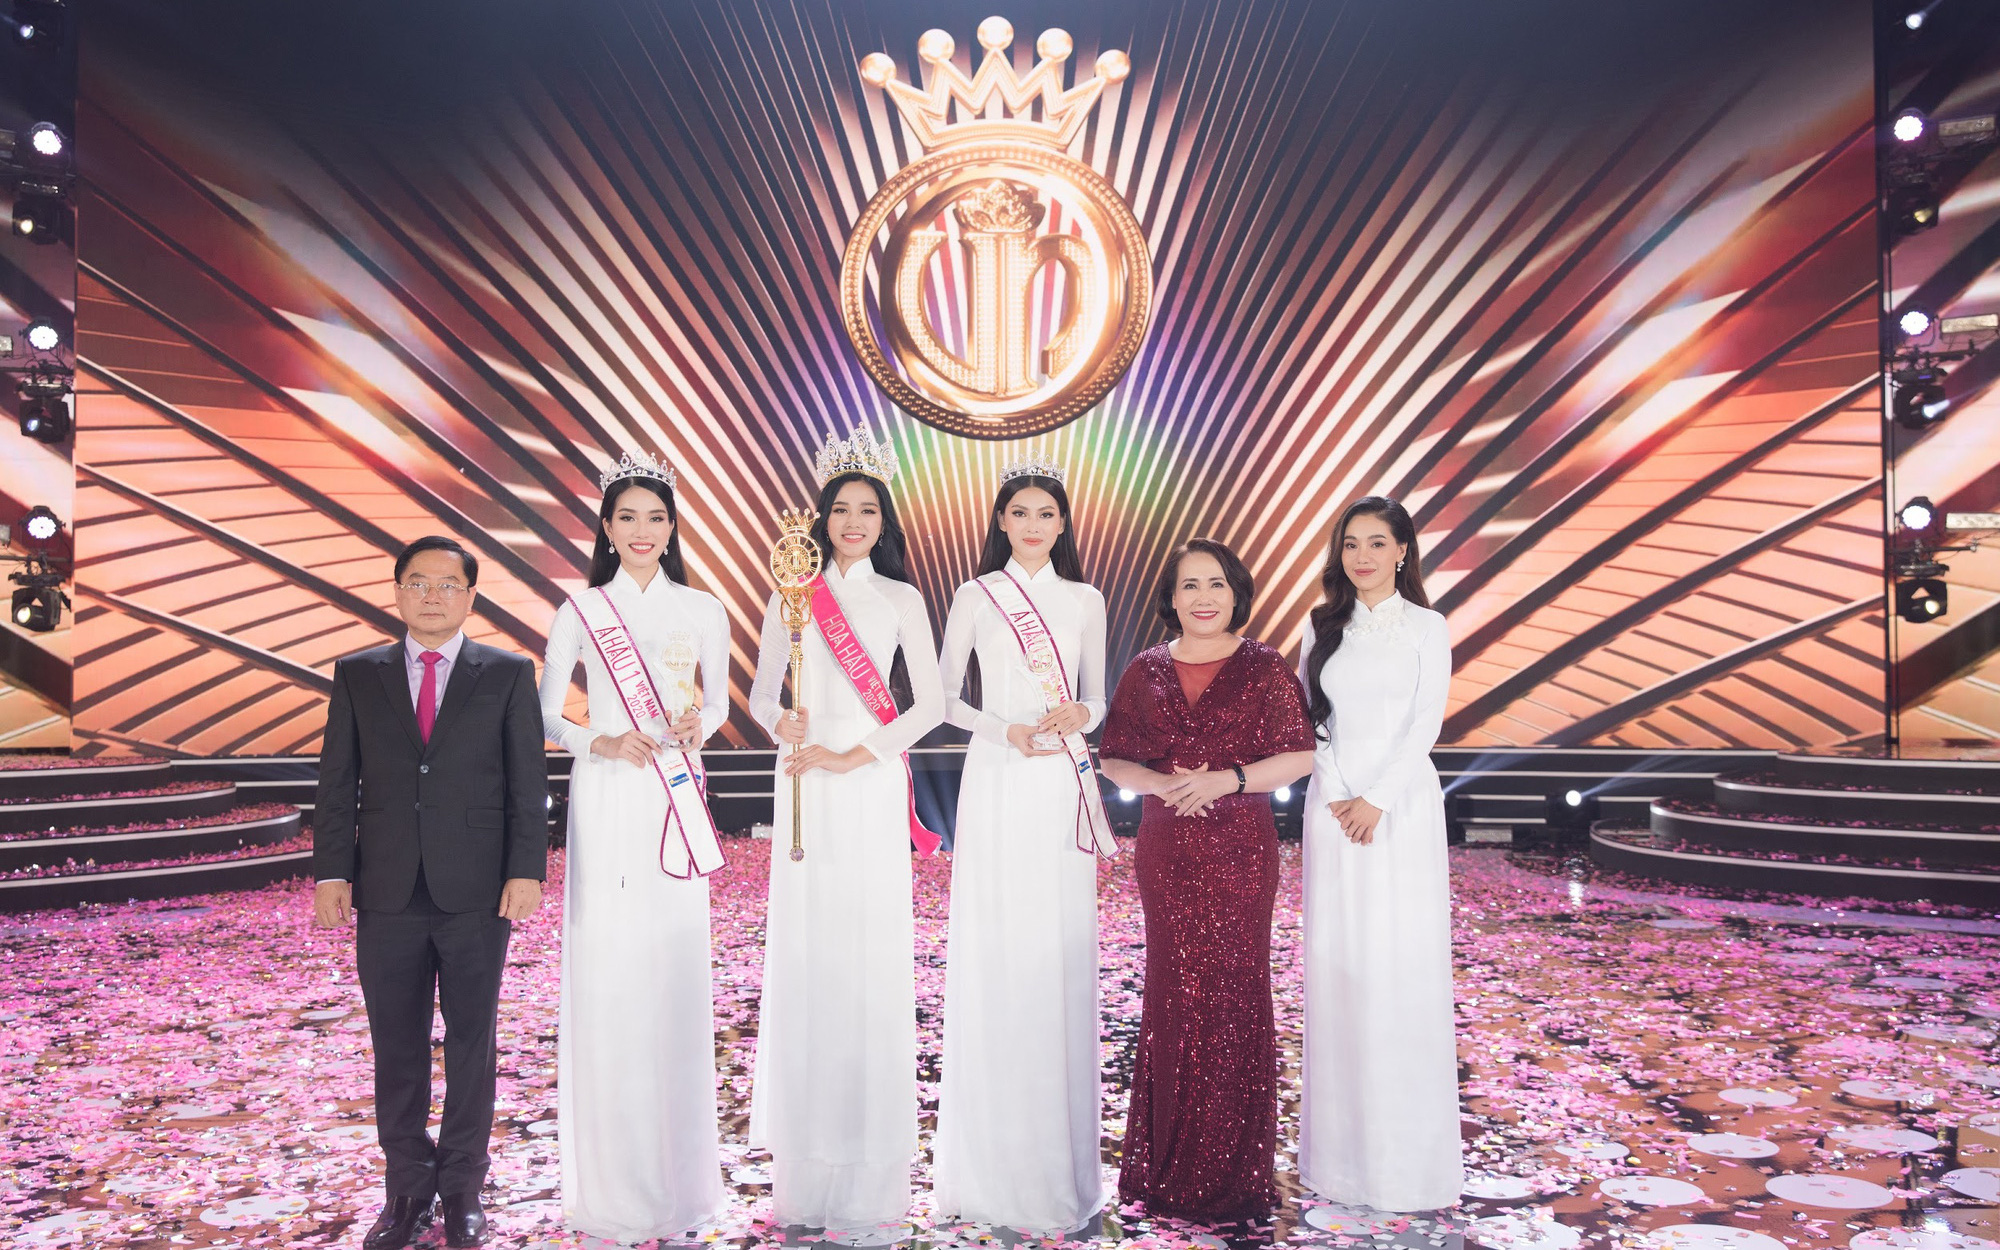 Go Spring đồng hành cùng Hoa hậu Việt Nam 2020 tại đêm Chung kết - Đêm bùng nổ của thập kỷ hương sắc mới